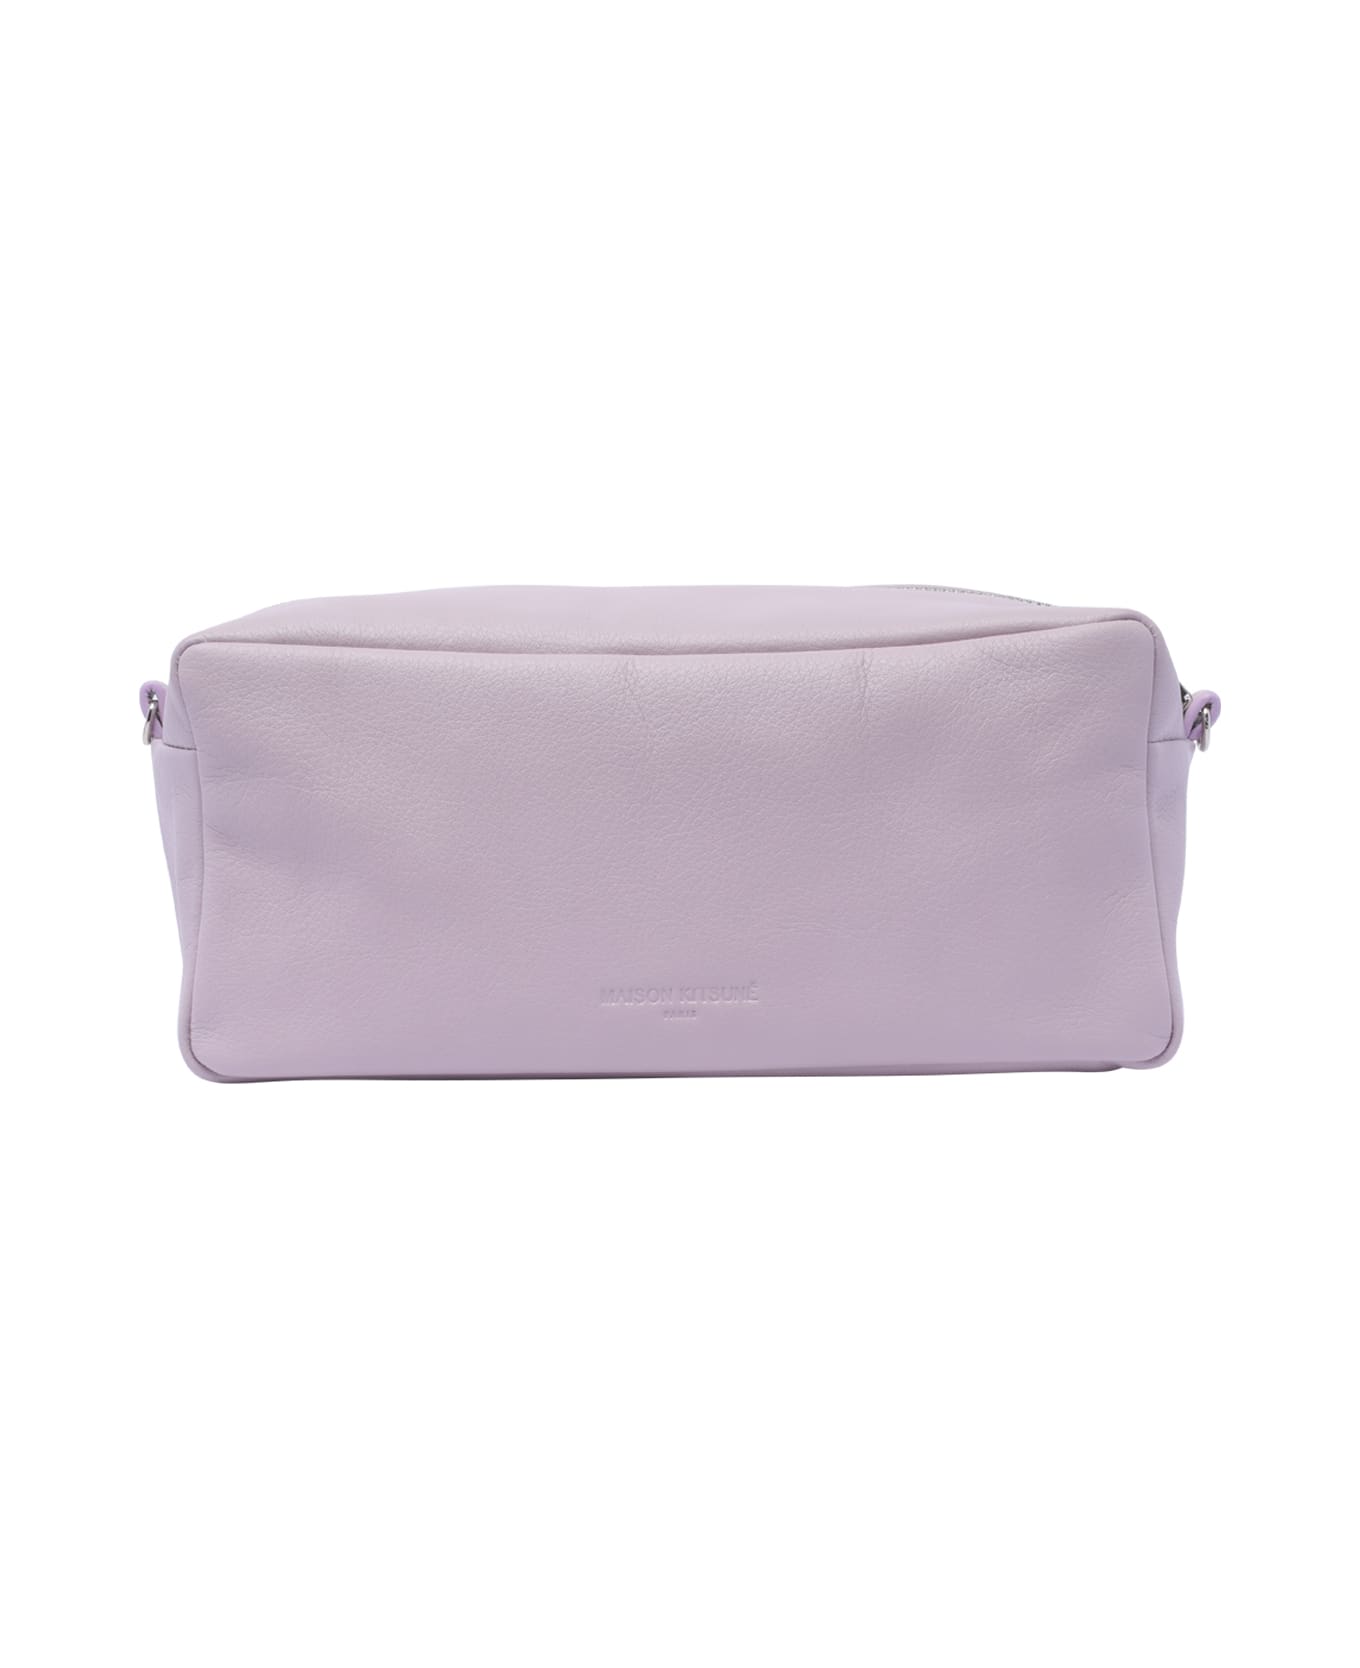 Maison Kitsuné Cloud Trousse Bag - Purple